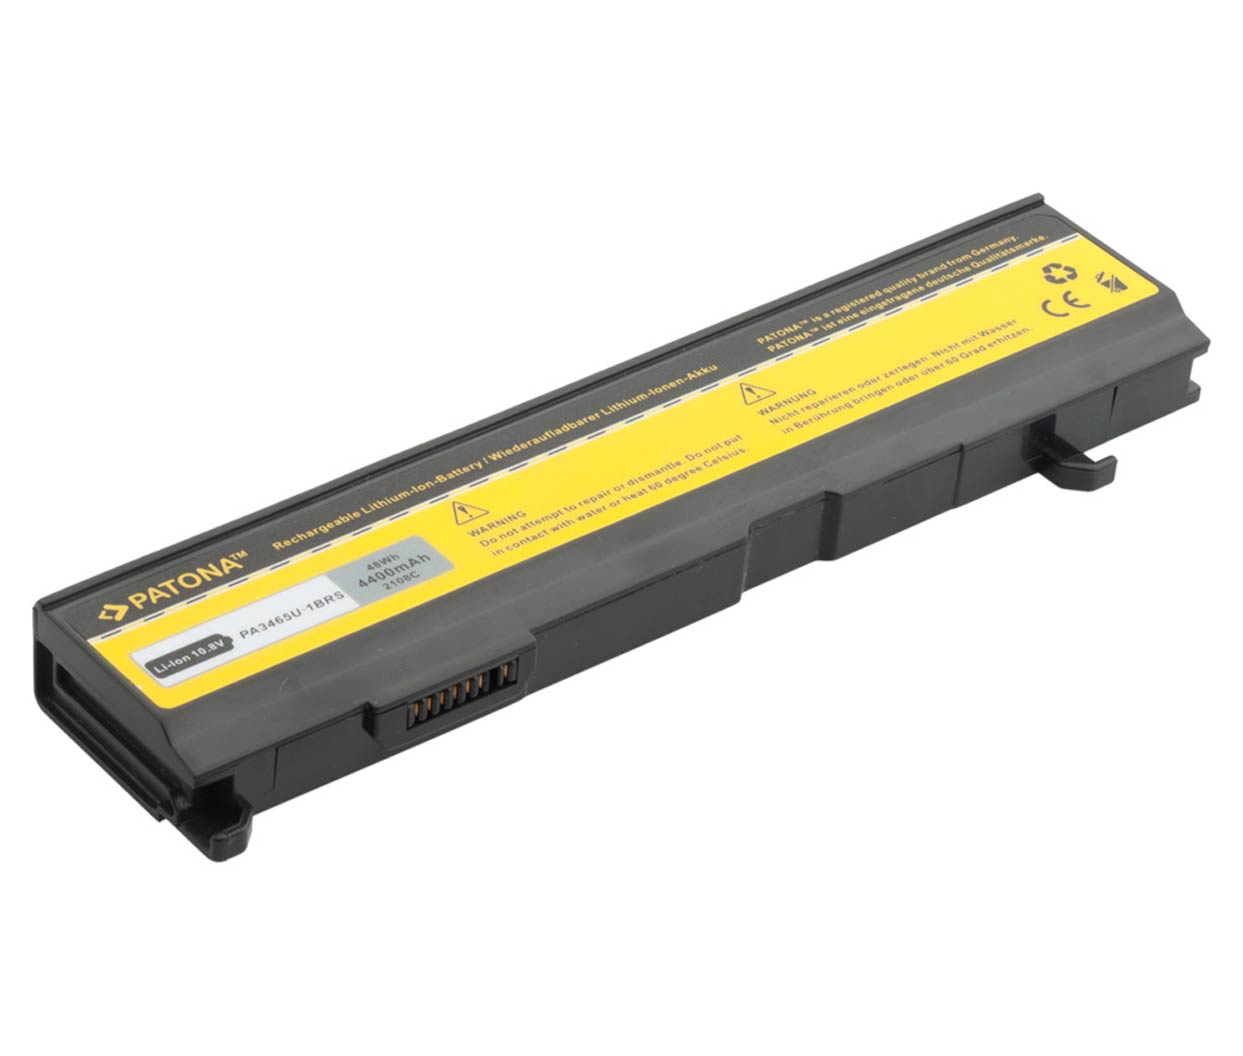 Baterija za Toshiba Dynabook AX/55A TW/750LS Equium A110-233,.. 4400mAh